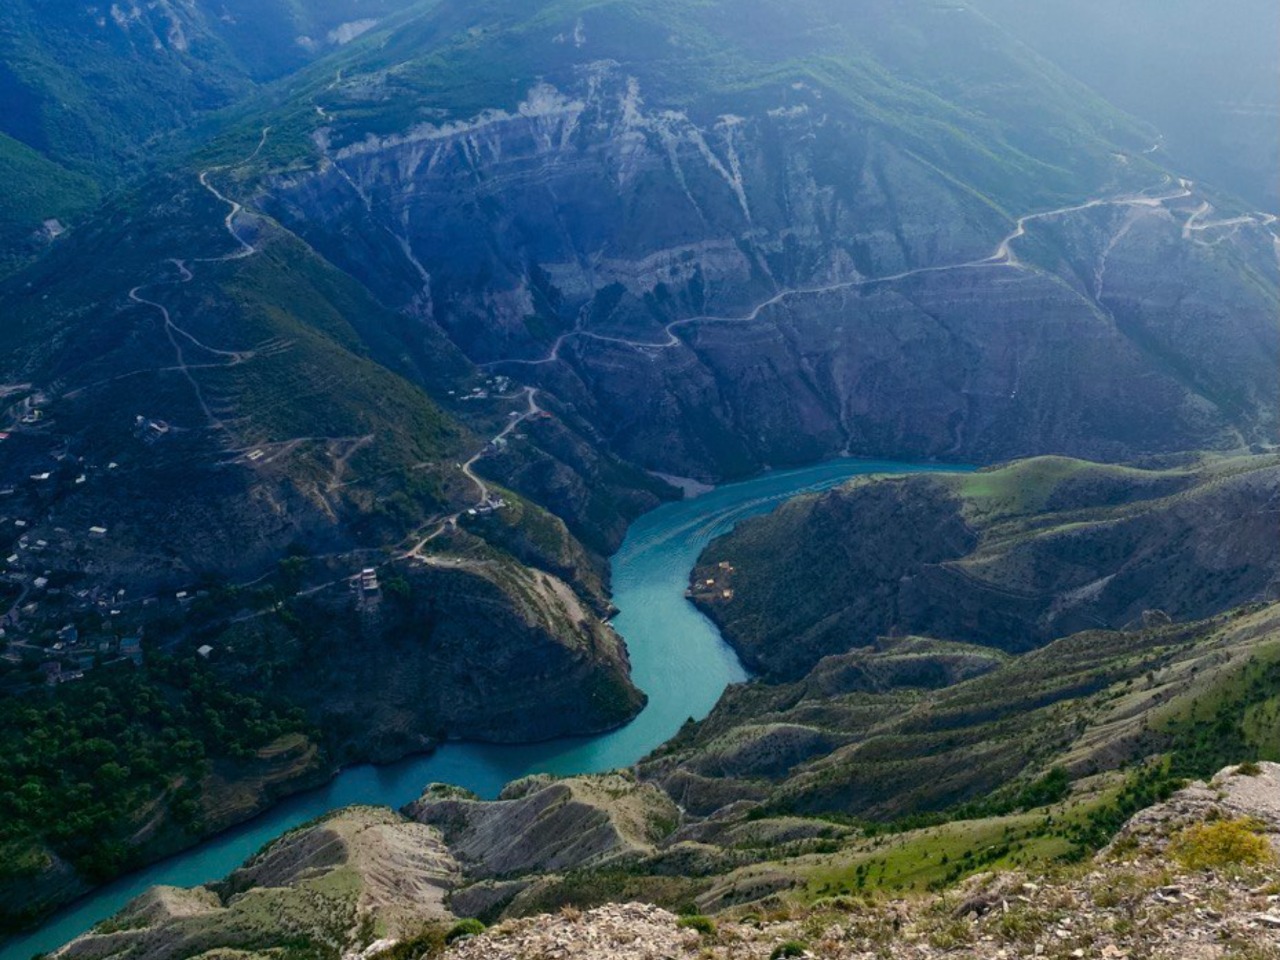 Из Чечни в Дагестан, к Сулакскому каньону! | Цена 14000₽, отзывы, описание экскурсии